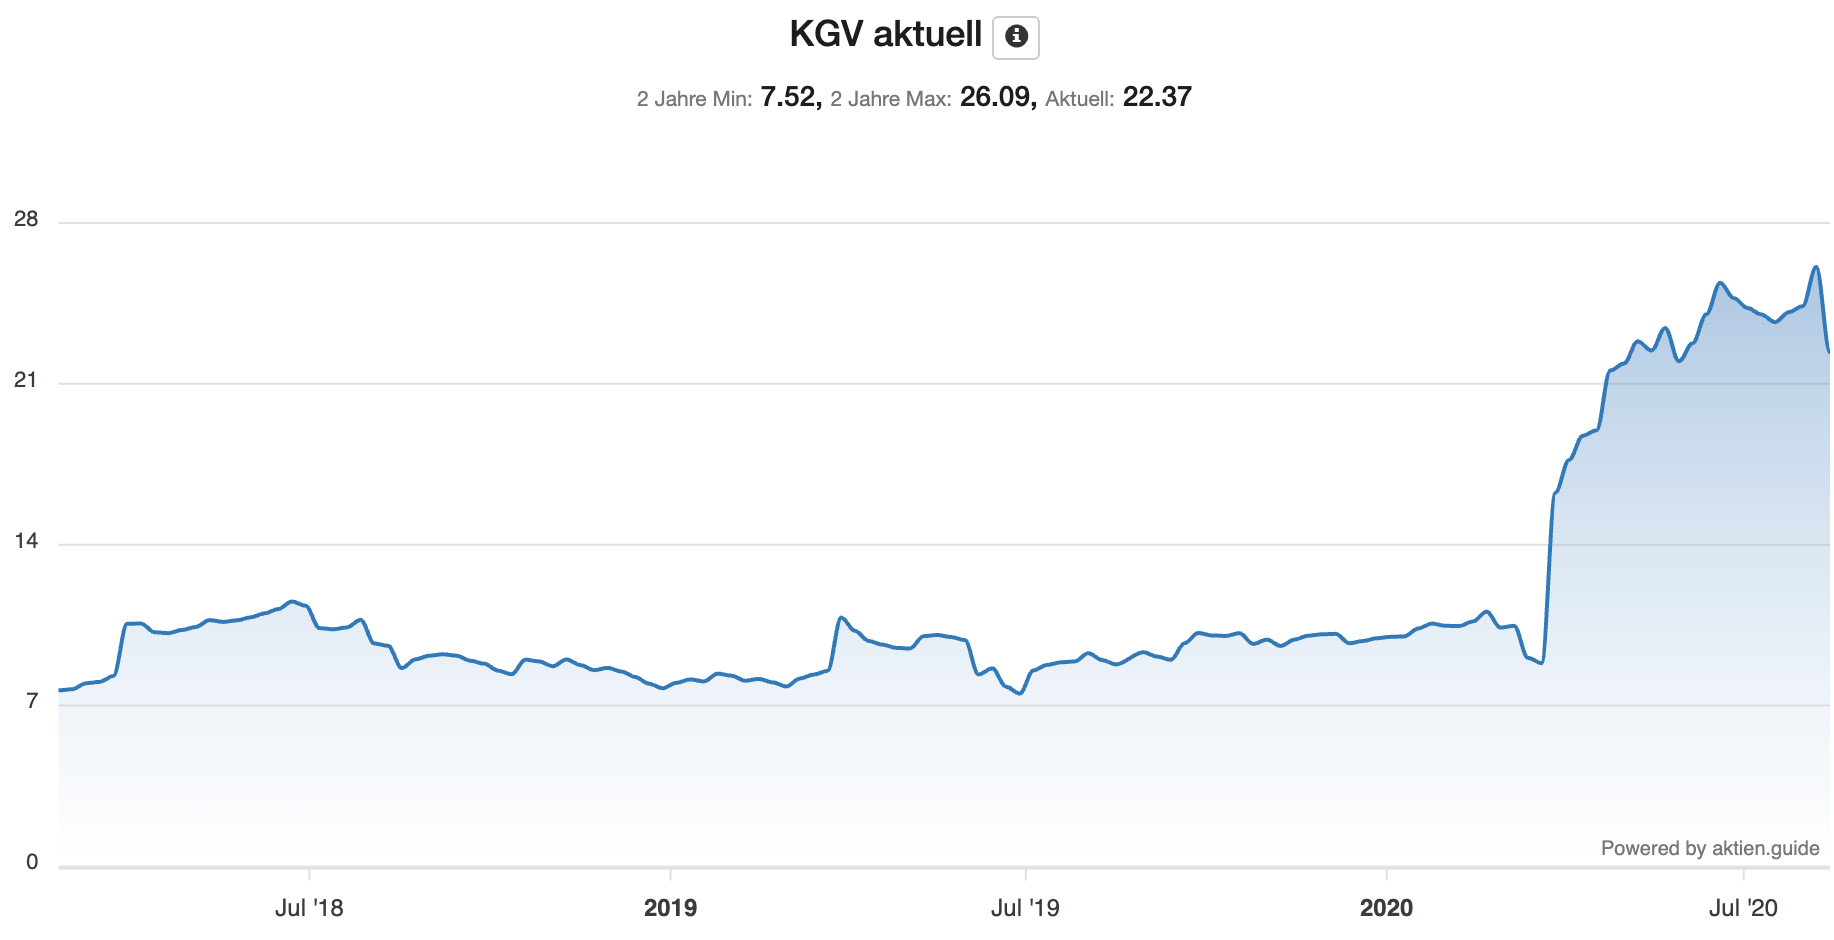 Deutsche Wohnen Aktie Entwicklung KGV der letzten Jahre